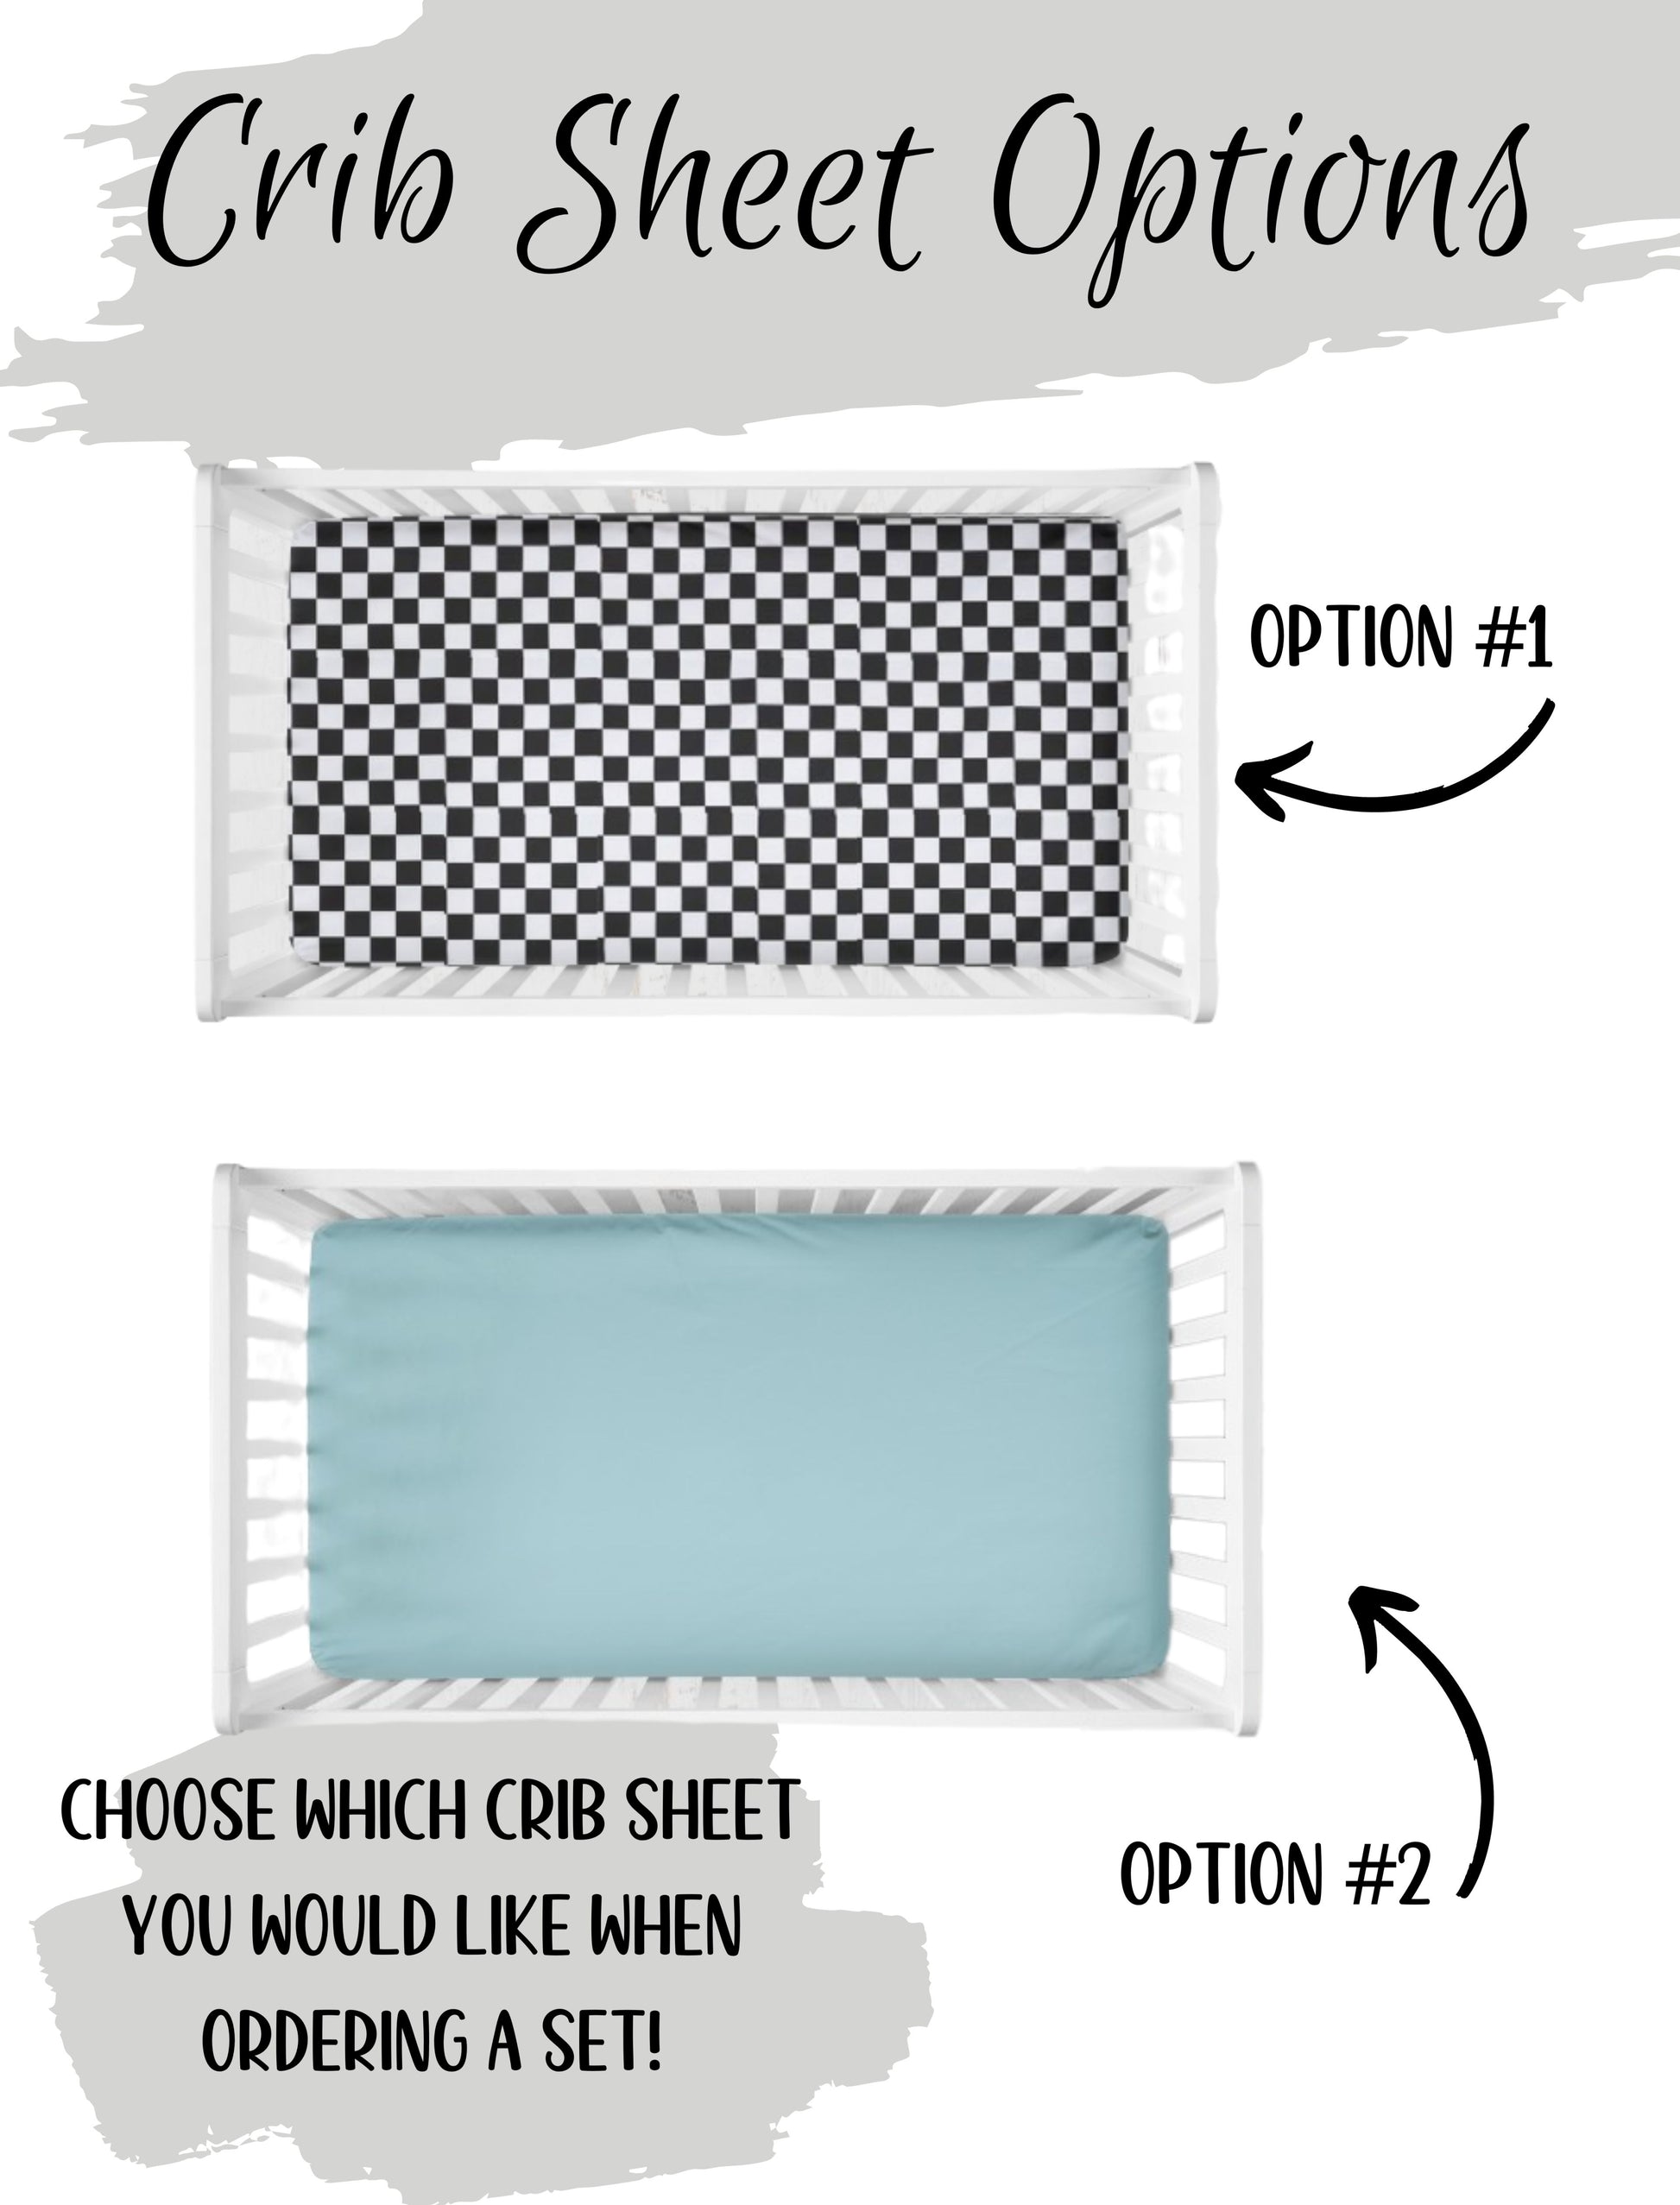 you pick your crib sheet - racing check or aqua